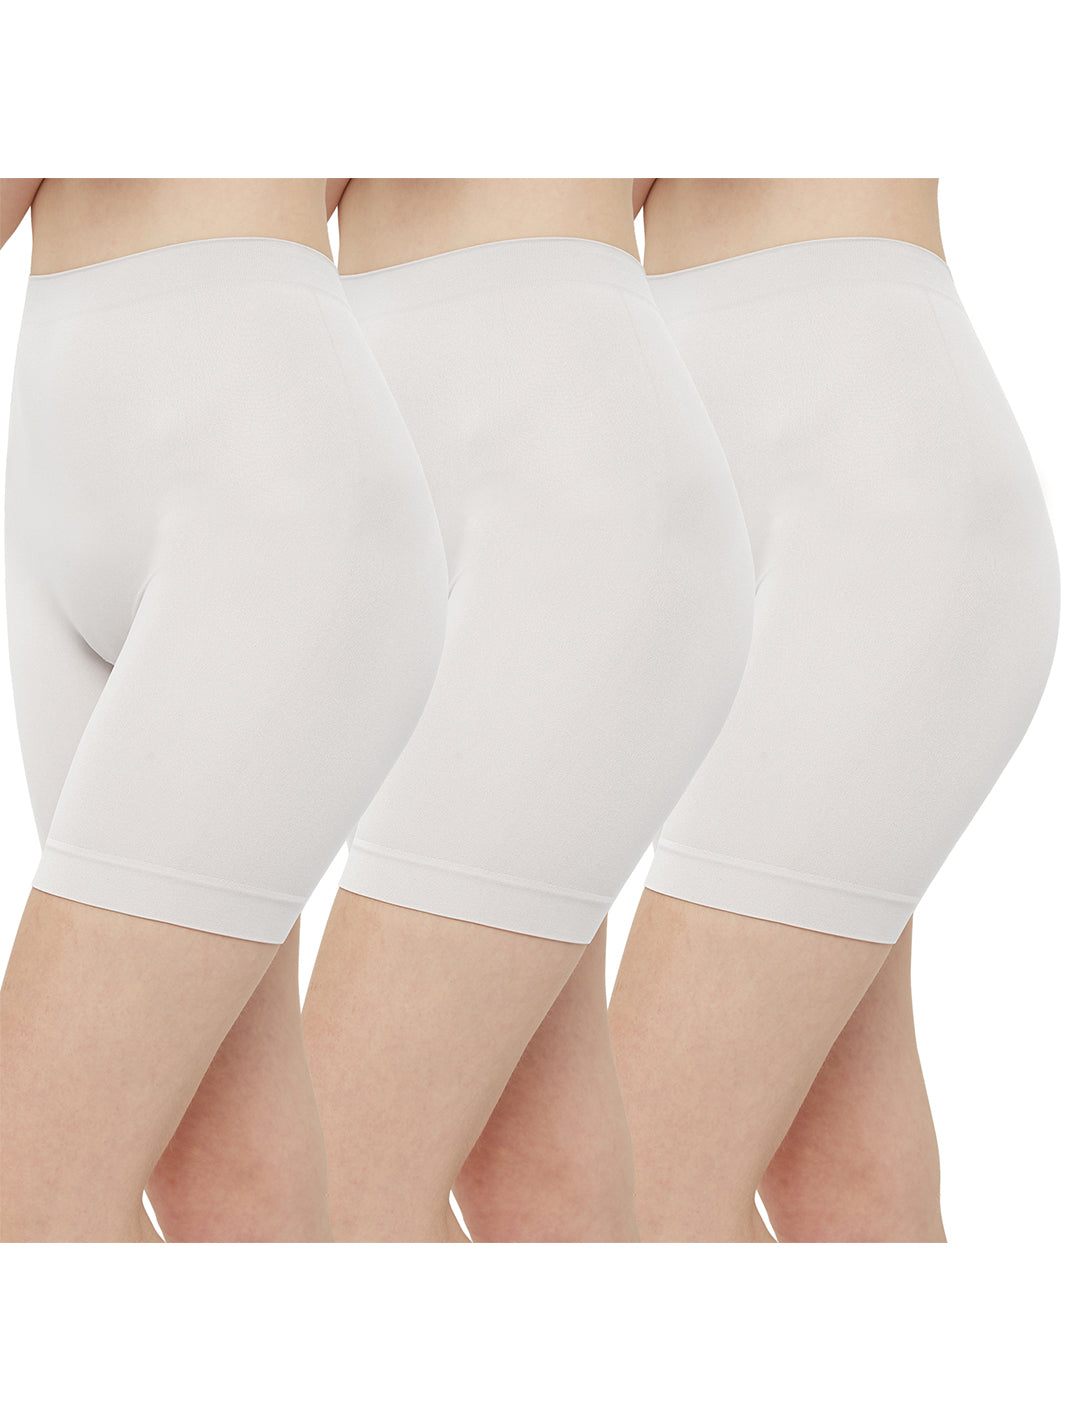 INNERSY Unterwäsche Frauen Bauchweg Unterhose Damen Slips Mehrpack